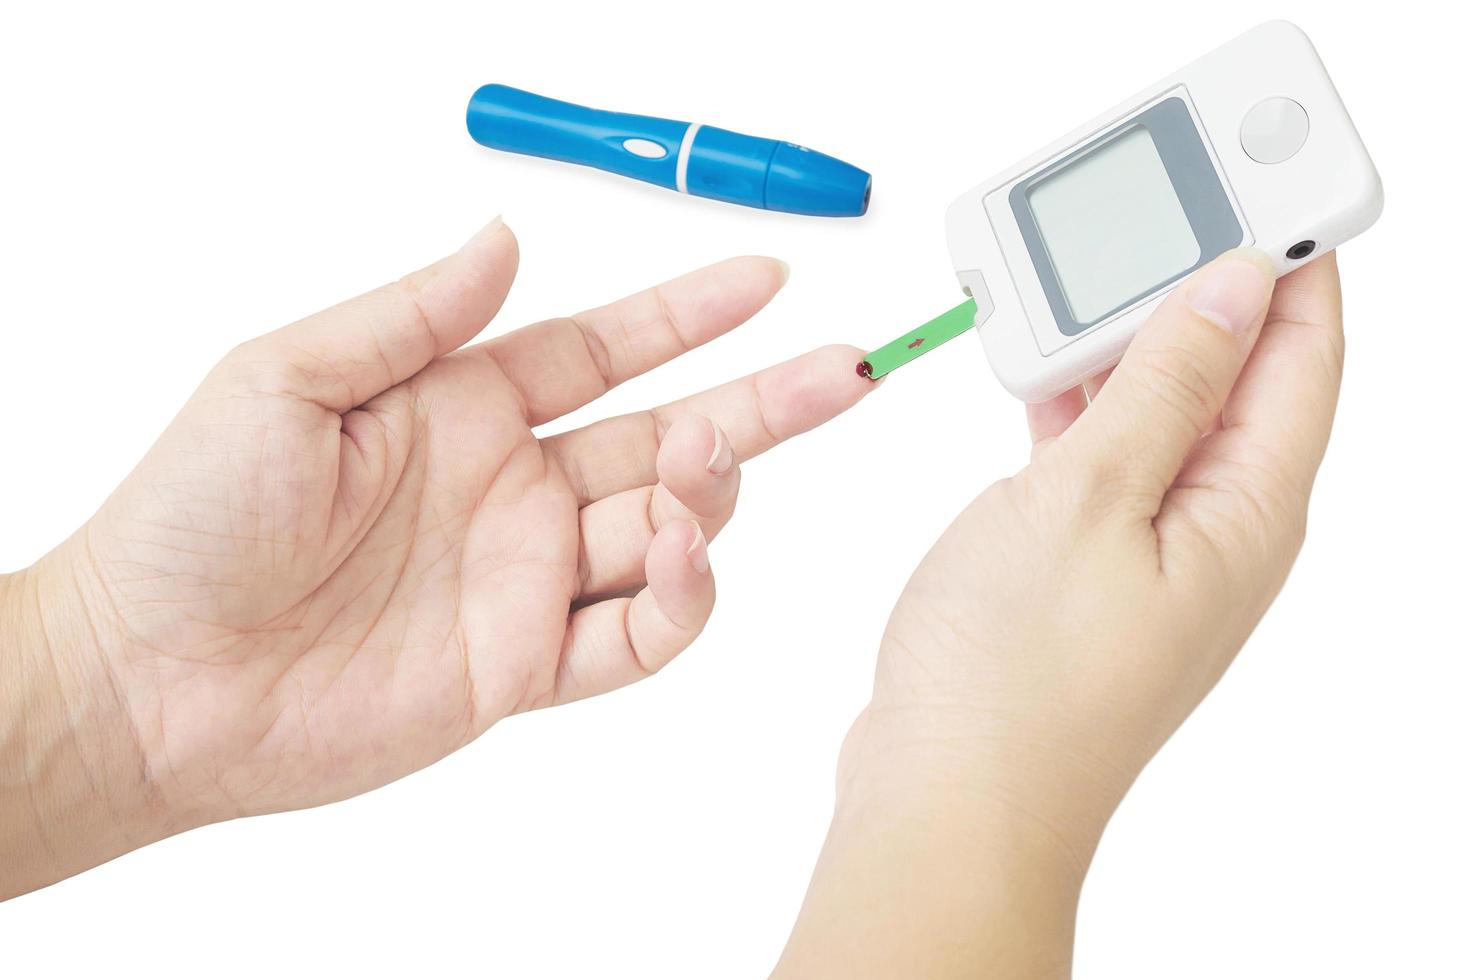 kvinnan kontrollerar diabetes med hjälp av blodkontrollkit isolerade över vita foto